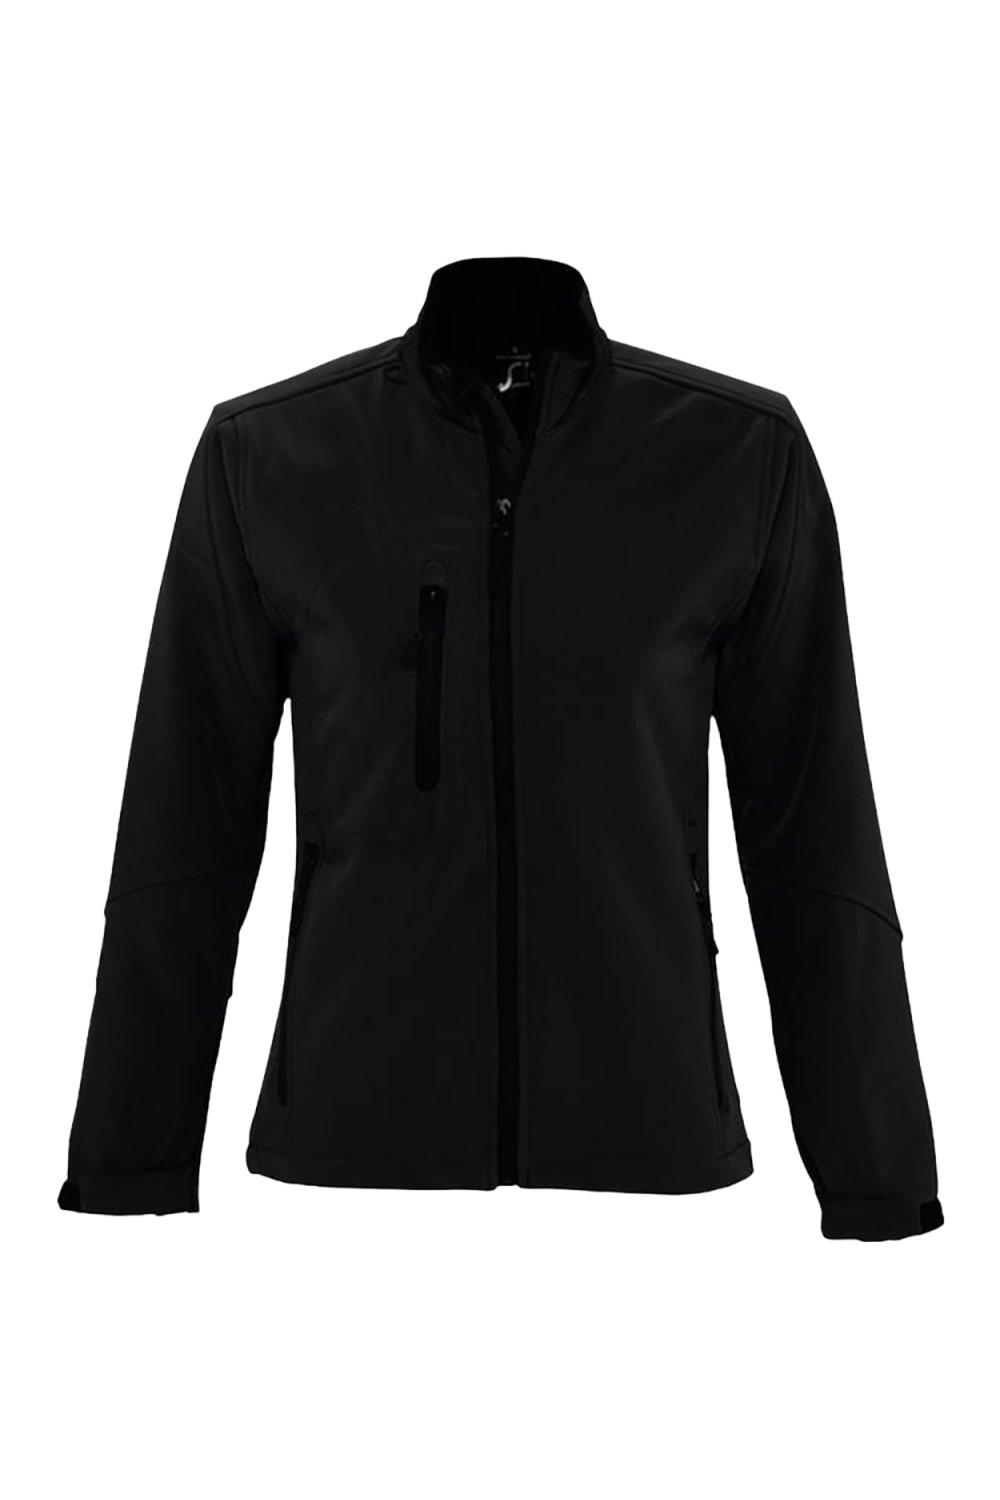 Куртка Roxy Soft Shell (дышащая, ветрозащитная и водостойкая) SOL'S, черный